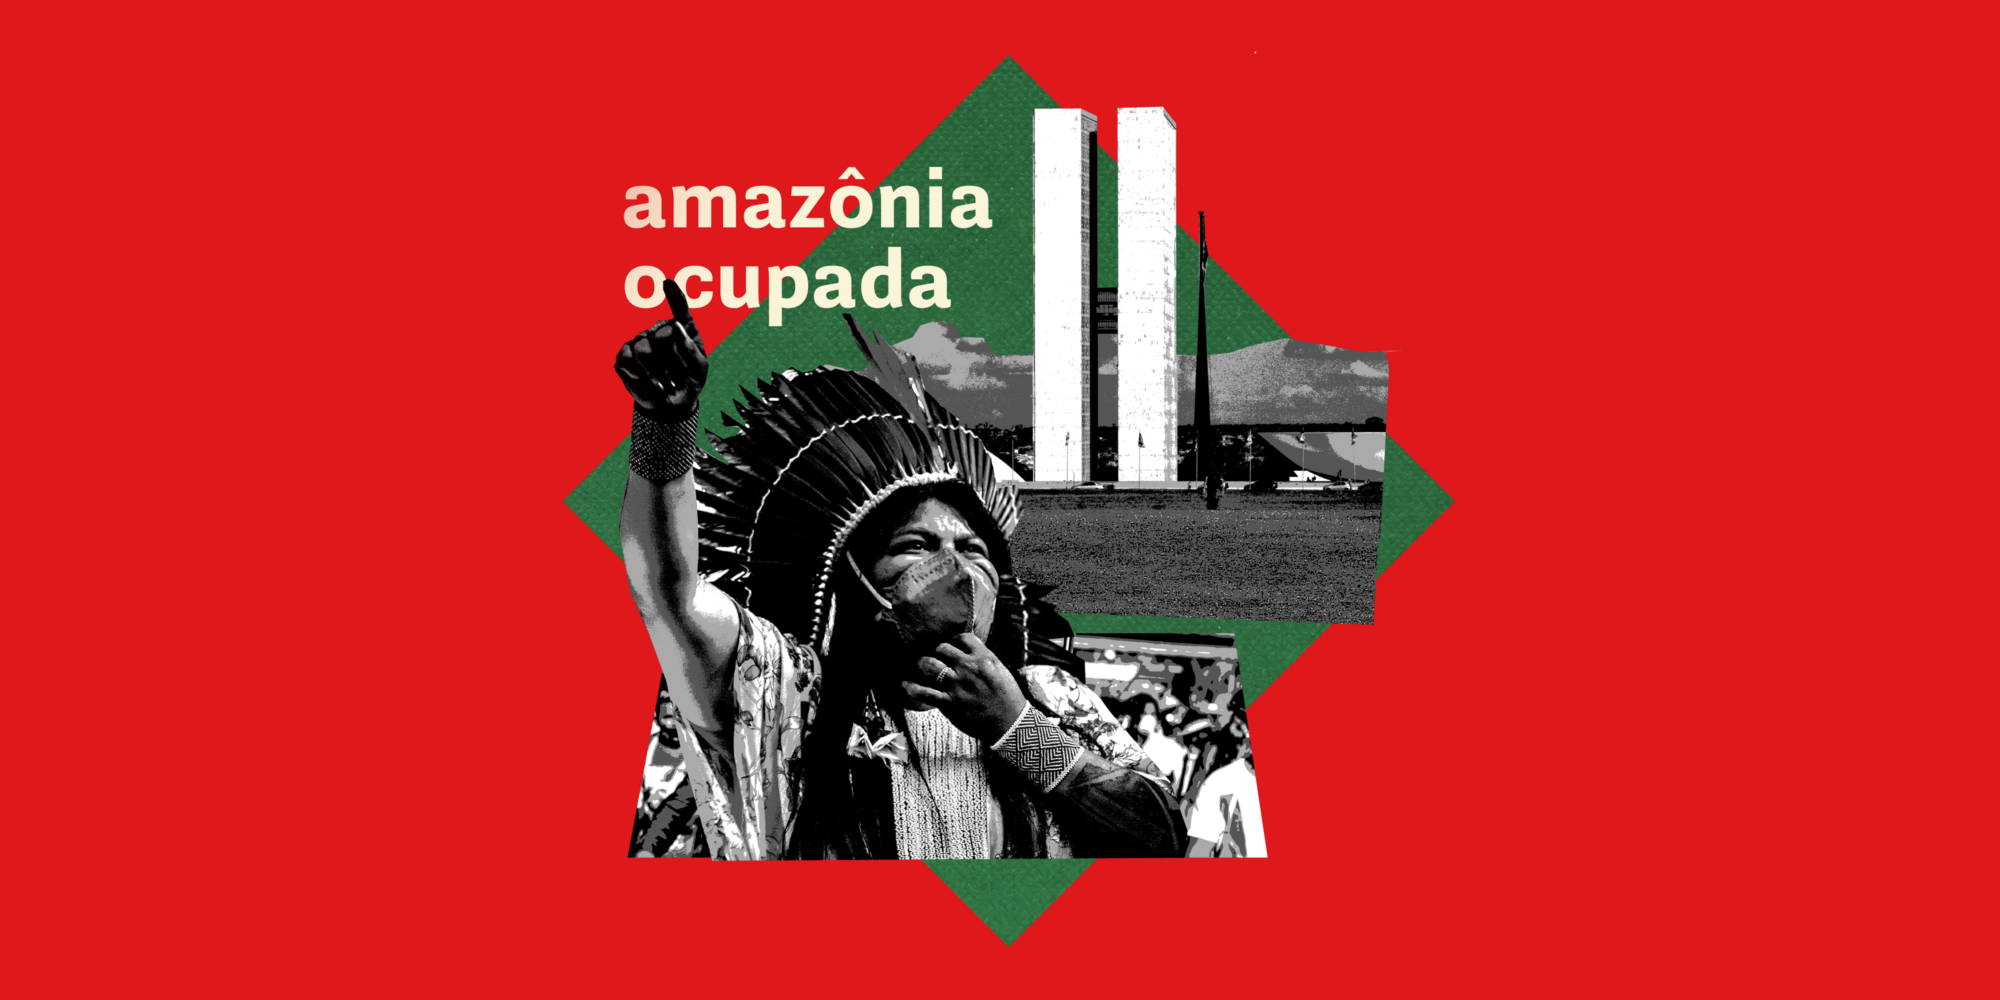 Quinto e último episódio de Amazônia Ocupada acompanha manifestações de indígenas em Brasília (Arte: Lucas Gomes / Diálogo Chino)